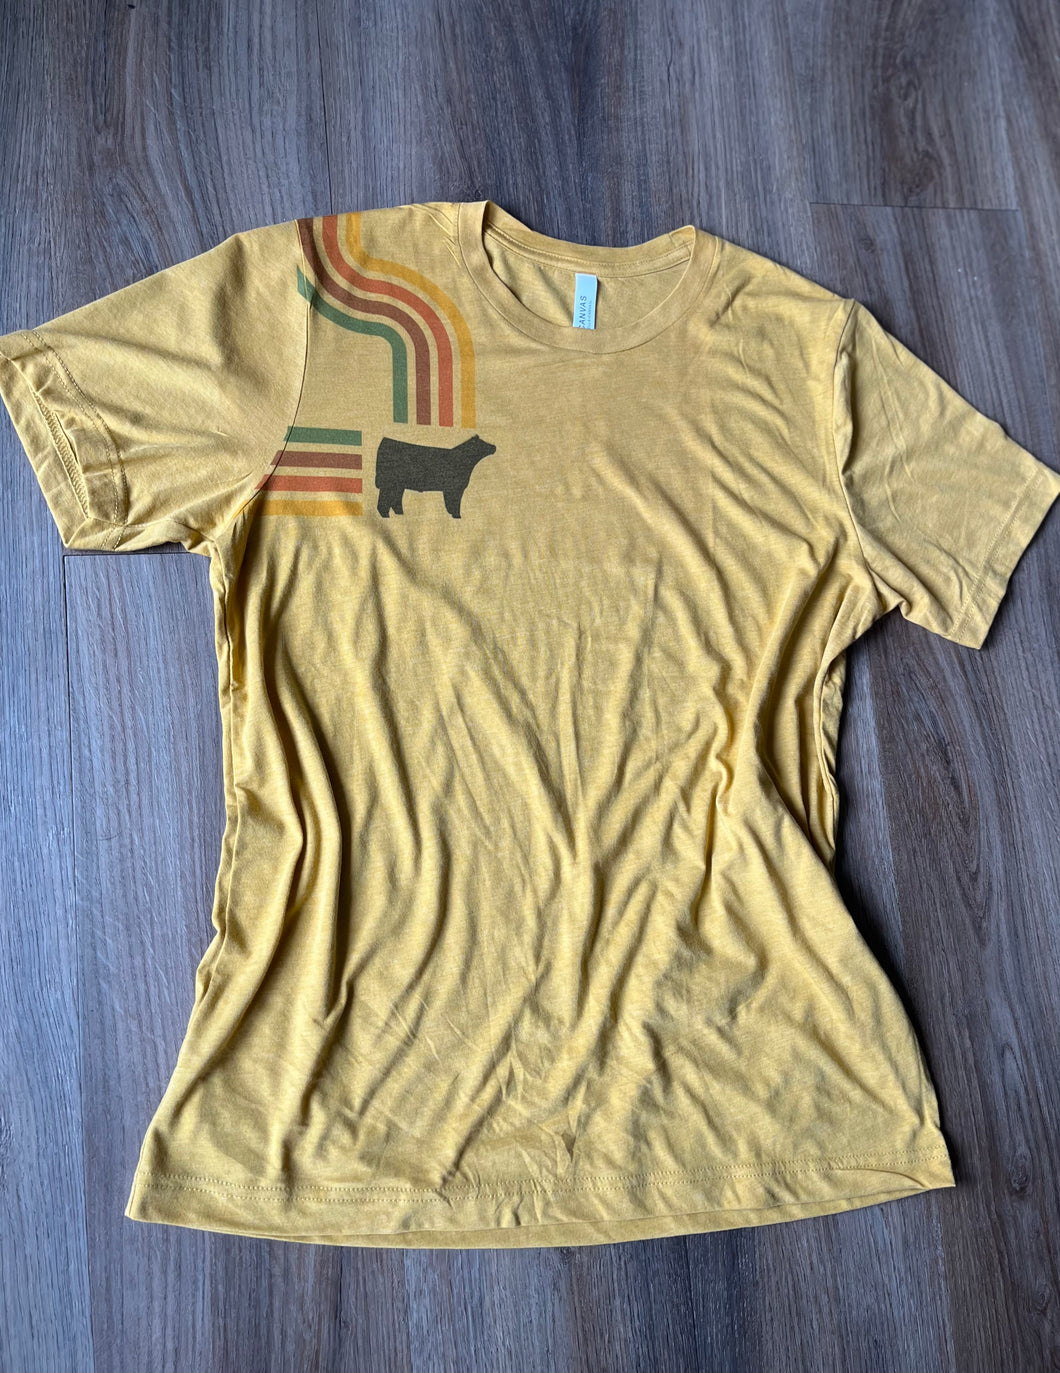 Vintage Show Stock T-shirt ~ unisex